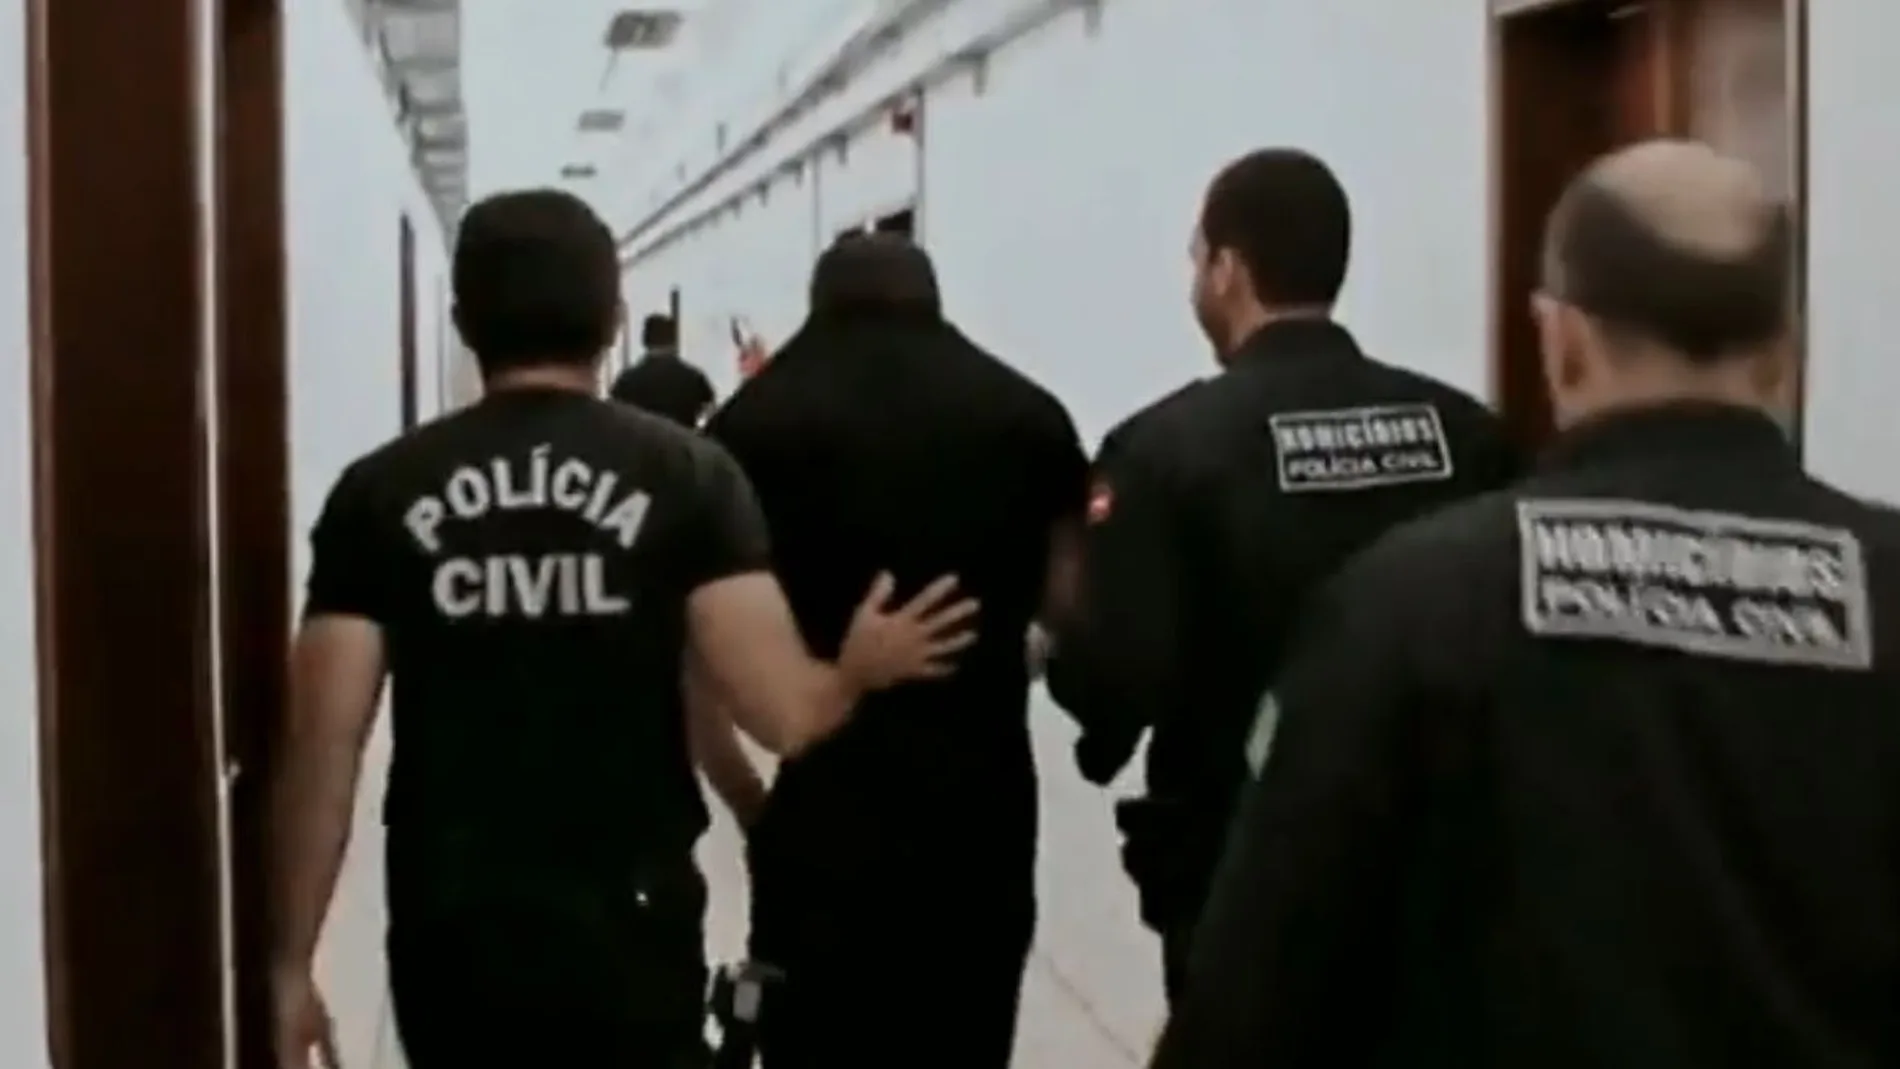 Patrick Nogueira, el asesino de Pioz, escoltado por la Policía de Brasil tras ser detenido para su traslado a España.